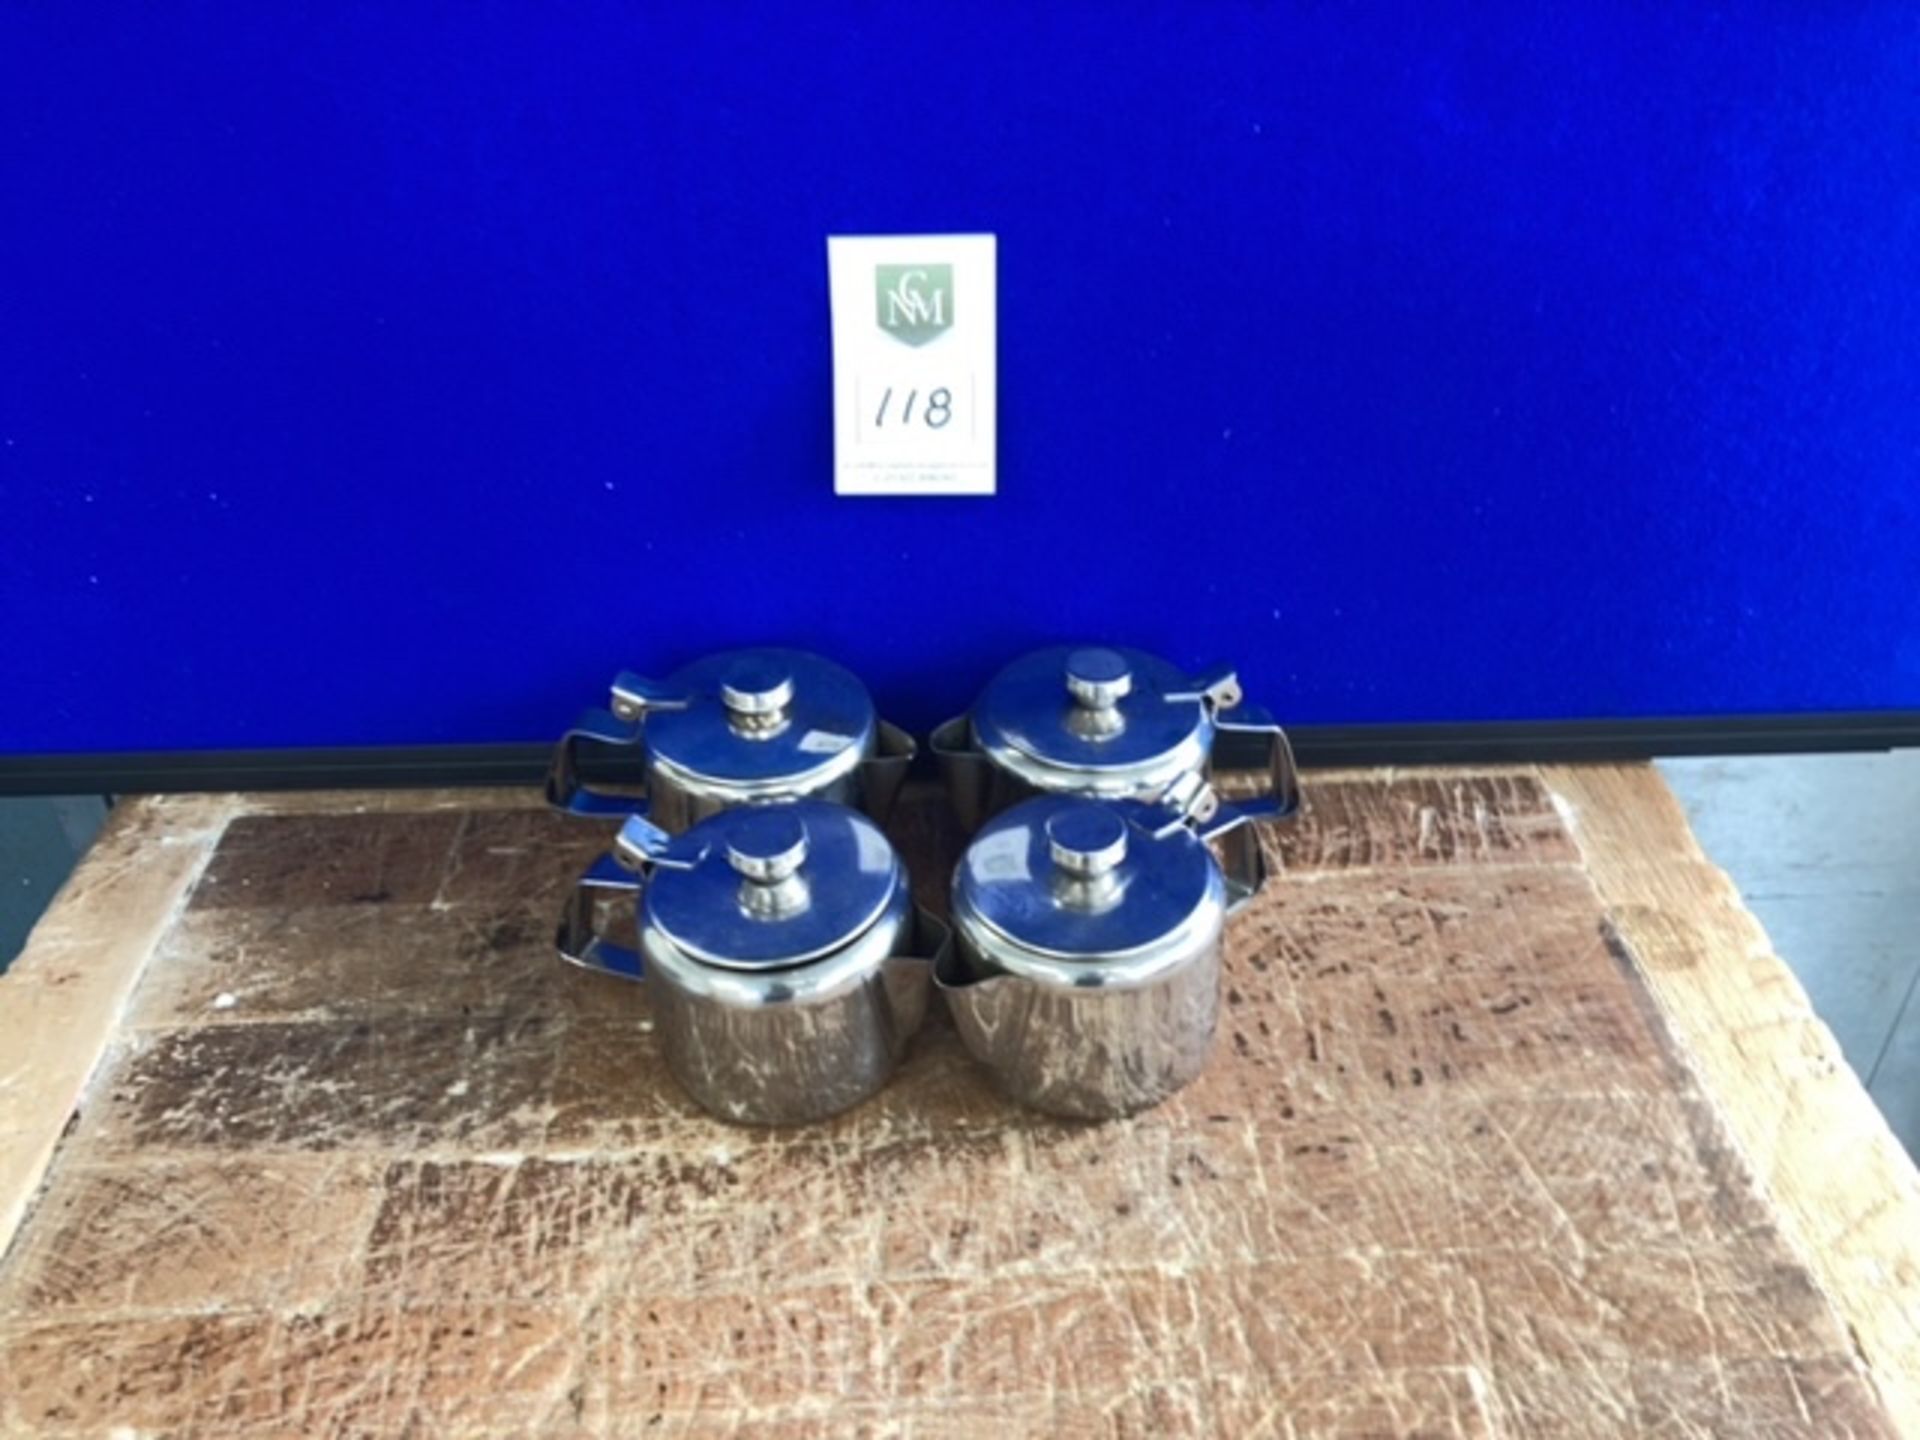 Set of tea pots